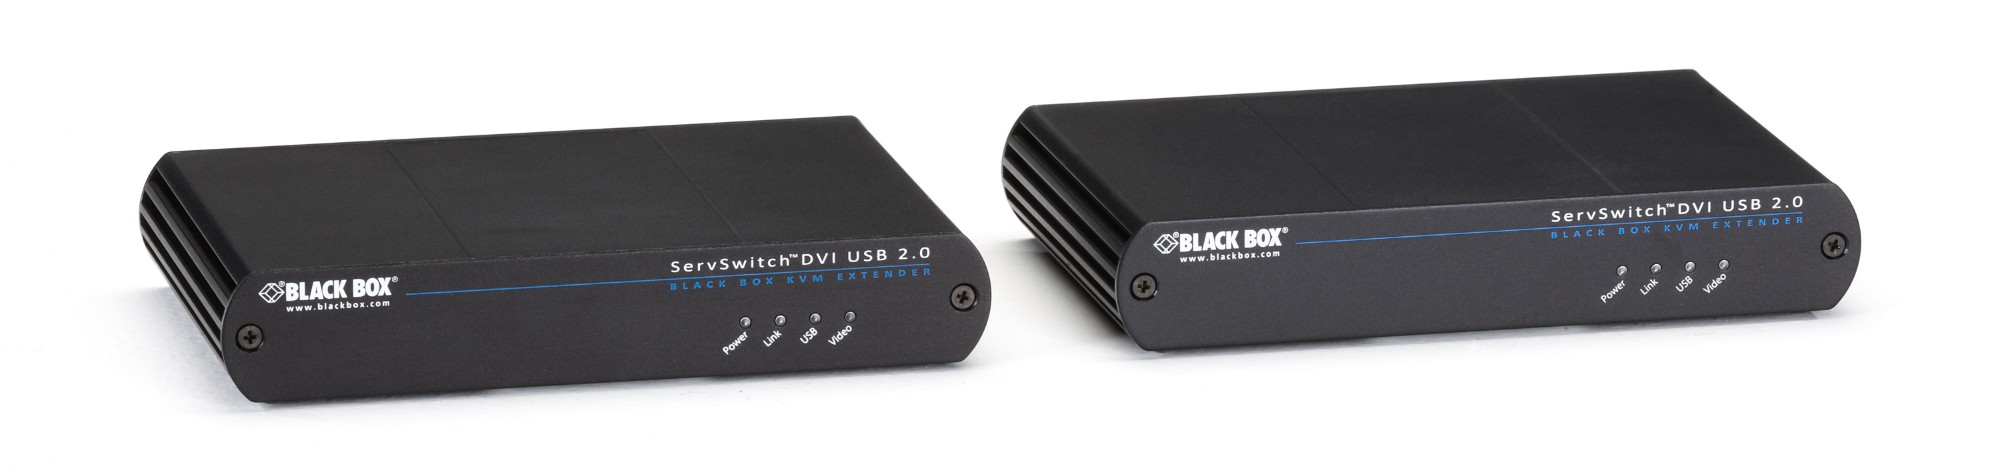 ACU1500A-R3 BLACK BOX KVM EXT DVID USB2.0 CATx